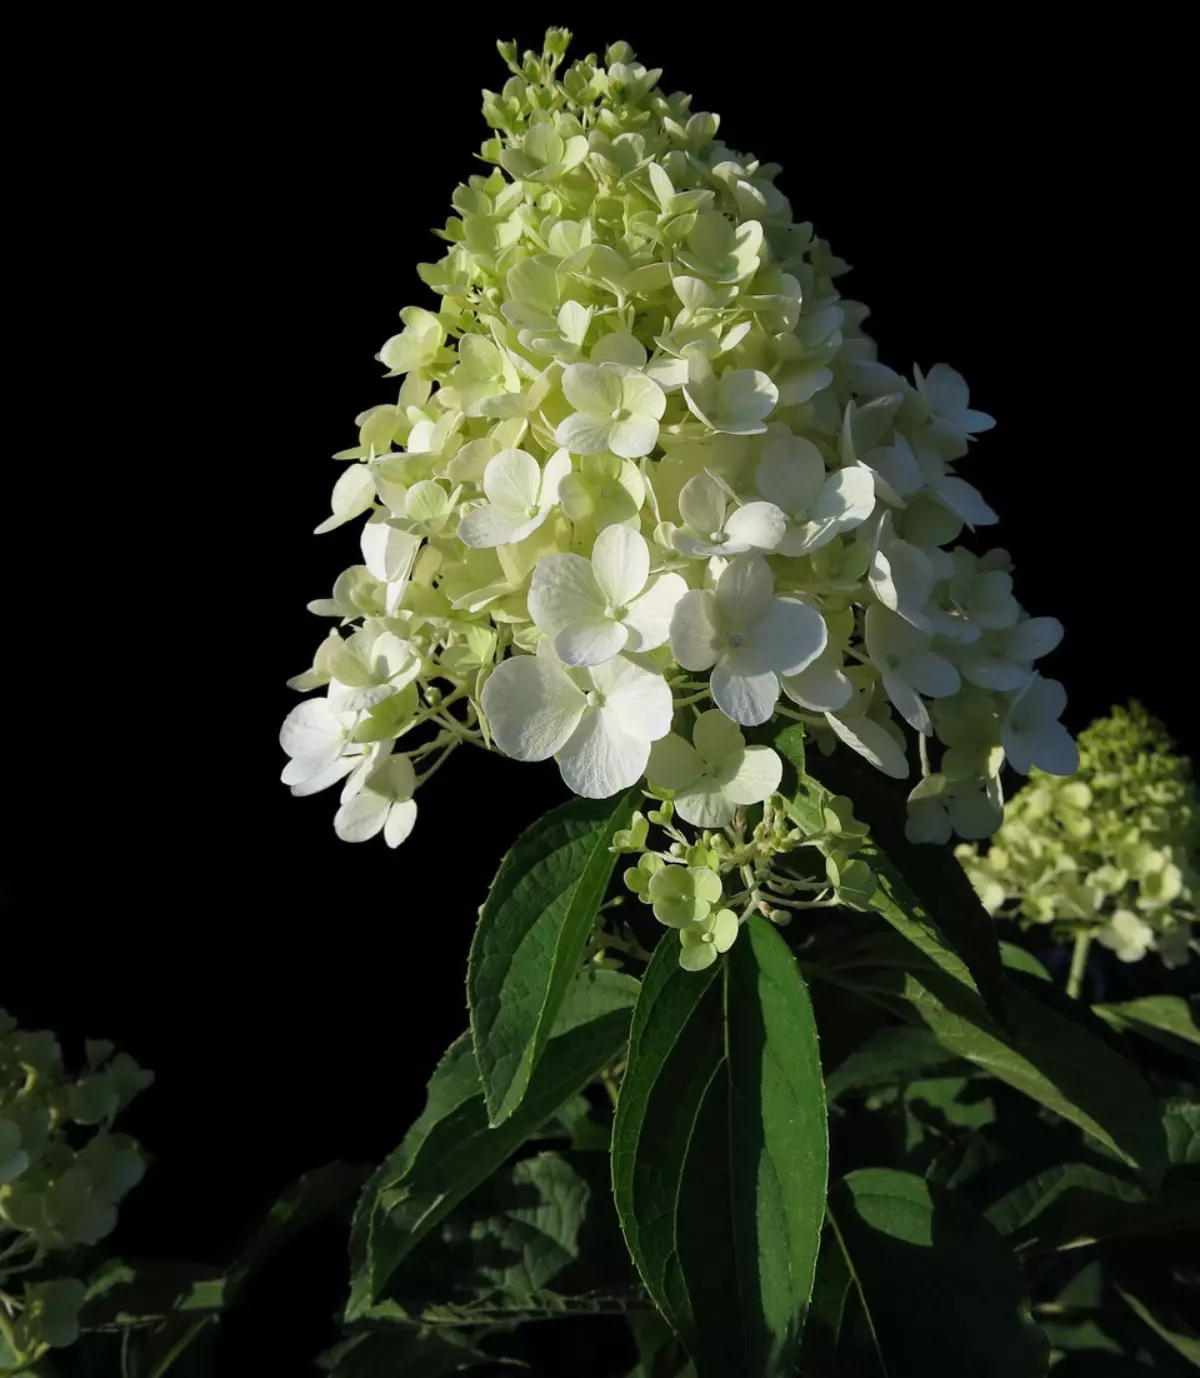 hortensia panicule a fleurs blanches sur fond noir